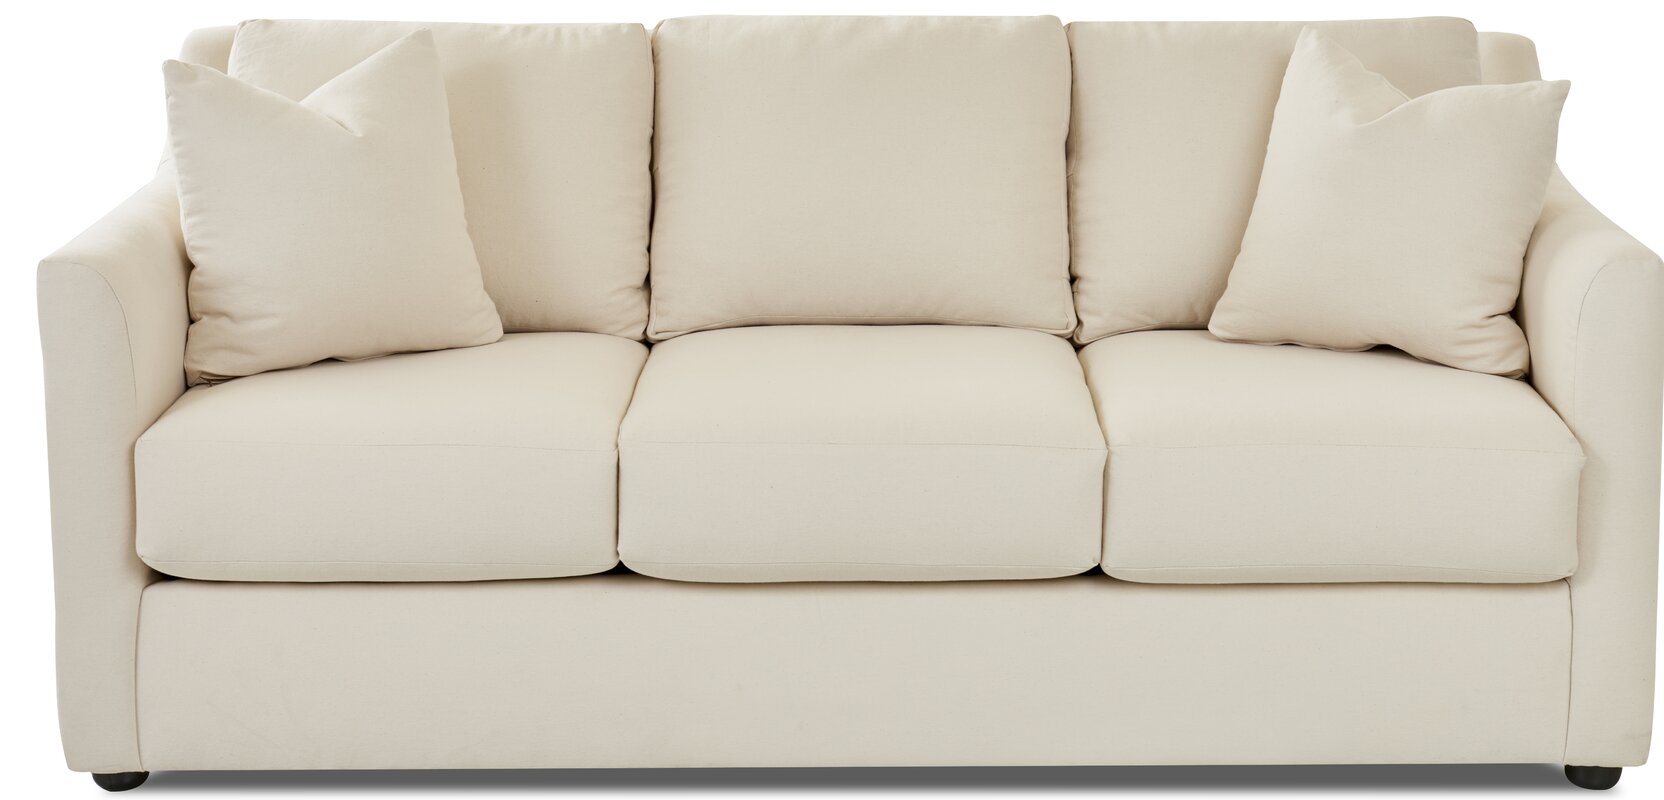 wayfair sofa beds sale